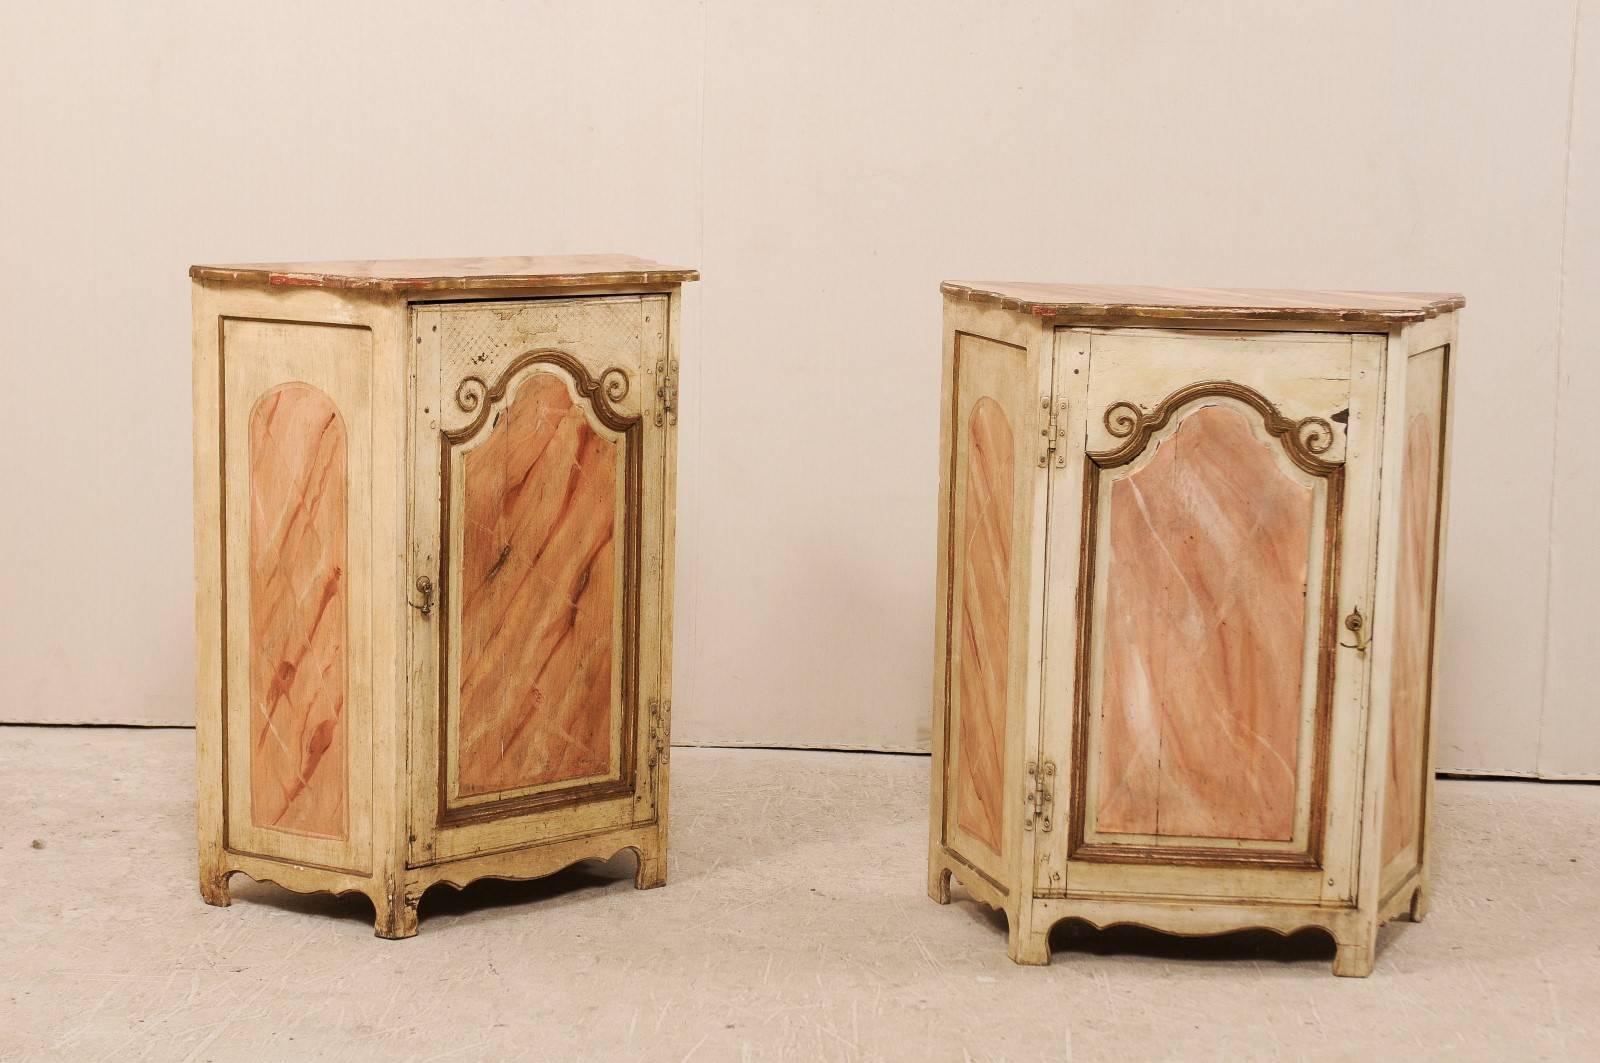 Une paire de petits commodini italiens en bois peint du début du 20e siècle. Ces coffres italiens comportent chacun une seule porte avec un panneau en retrait dont le sommet est arqué, flanqué de deux volutes de chaque côté. Les panneaux de la porte